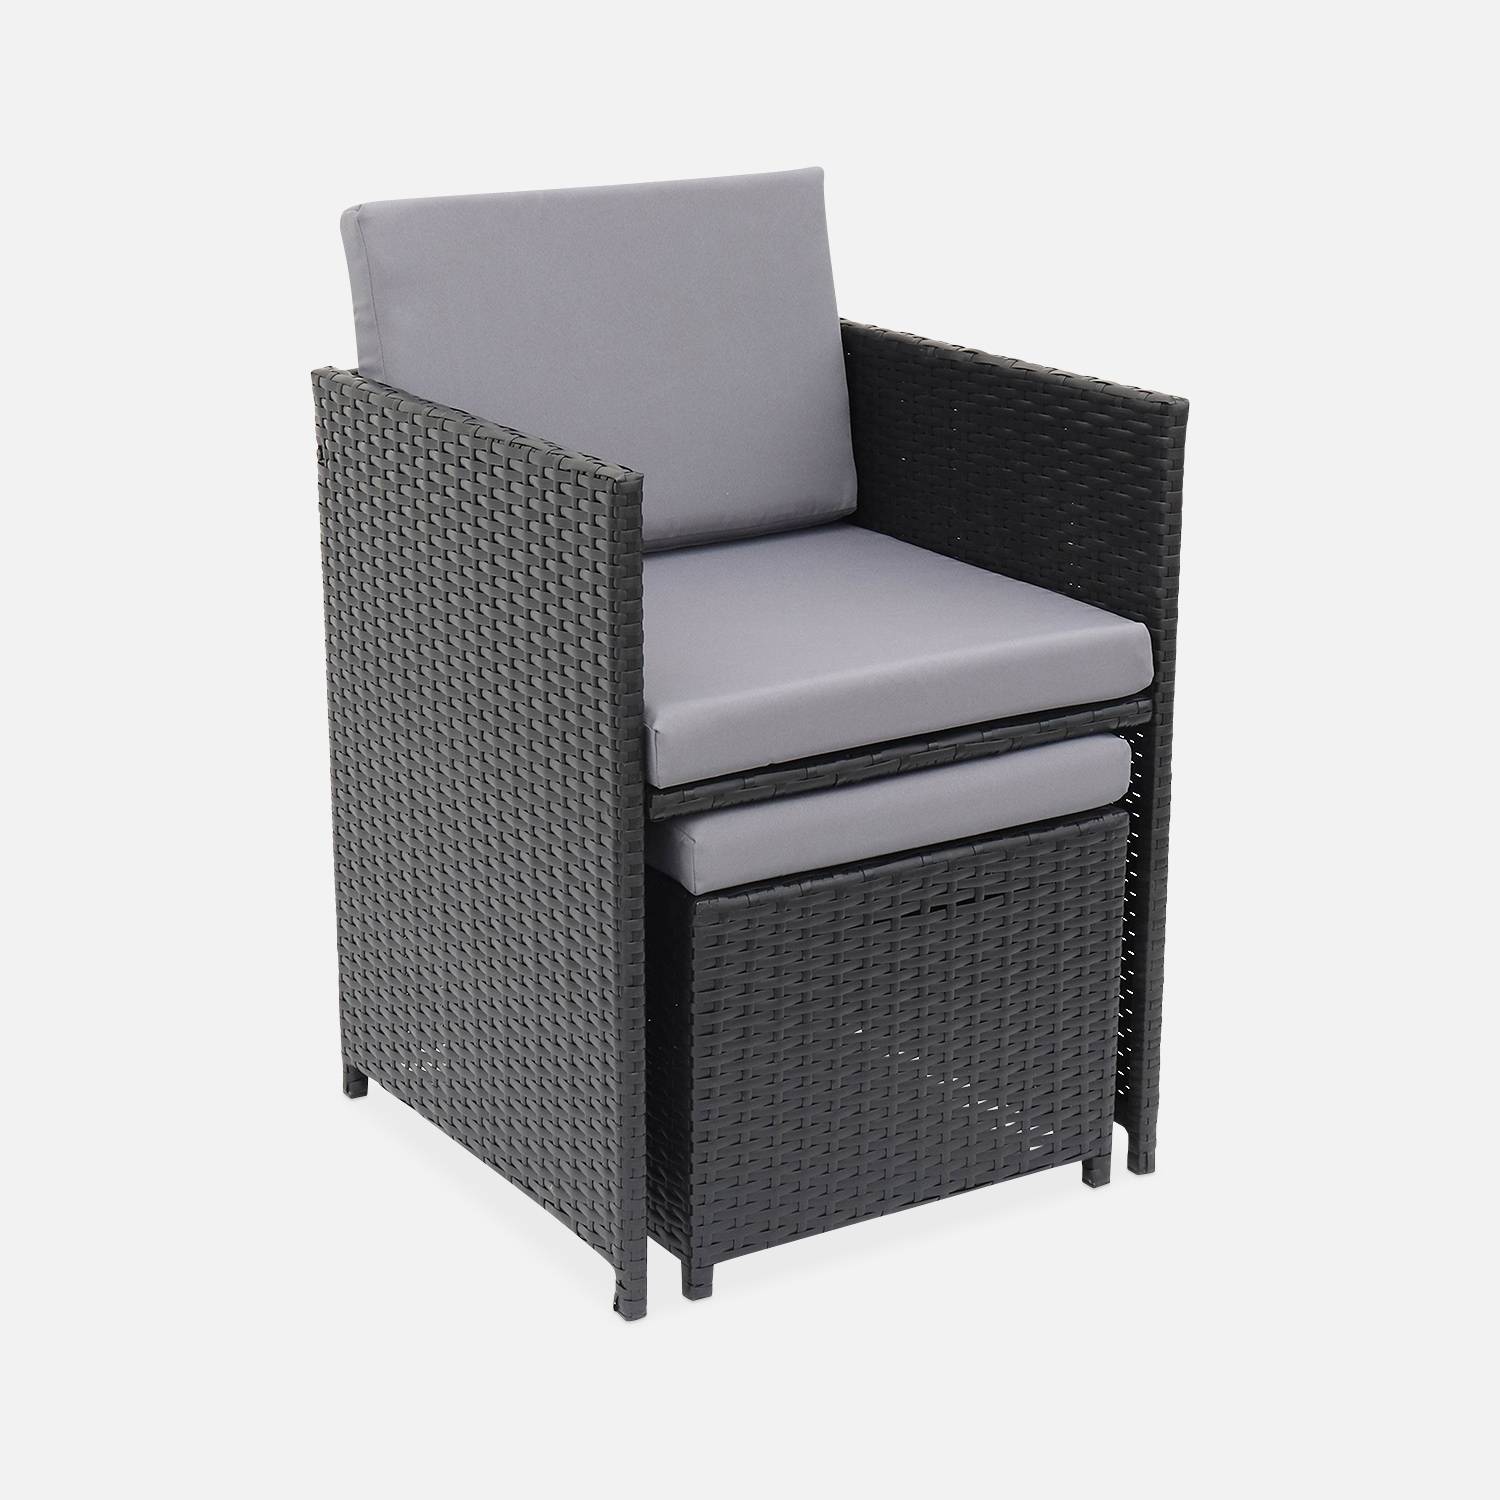 Conjunto de muebles de jardín 6-10 plazas - Fregadero - Color negro, cojines grises, mesa incorporada. Photo4